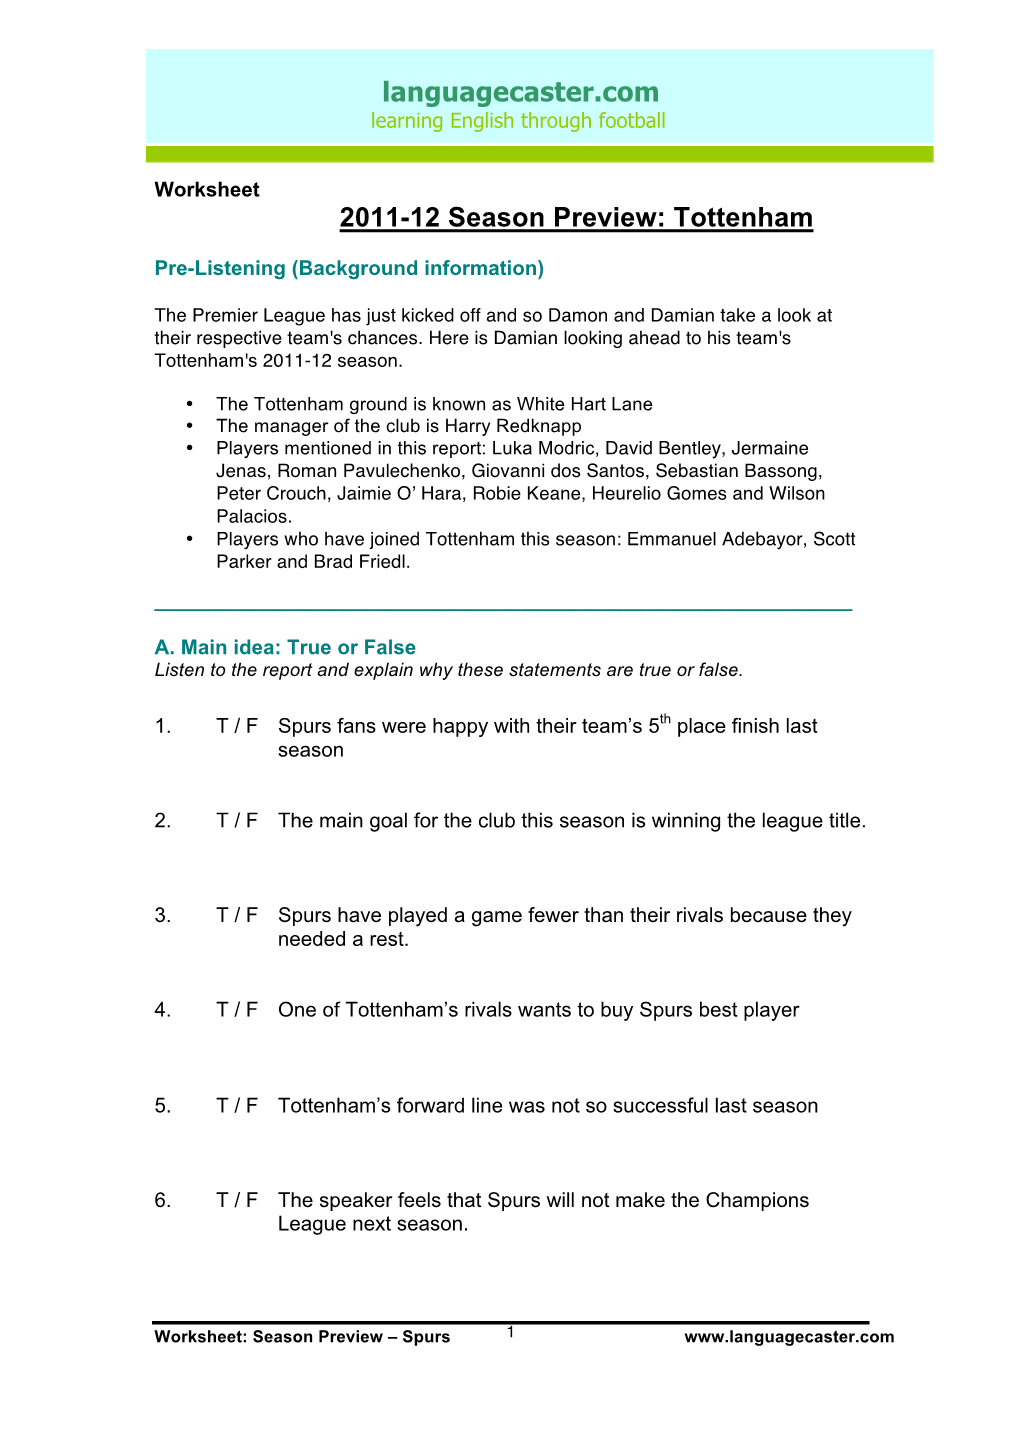 Worksheet-Spurs Preview 2011-12